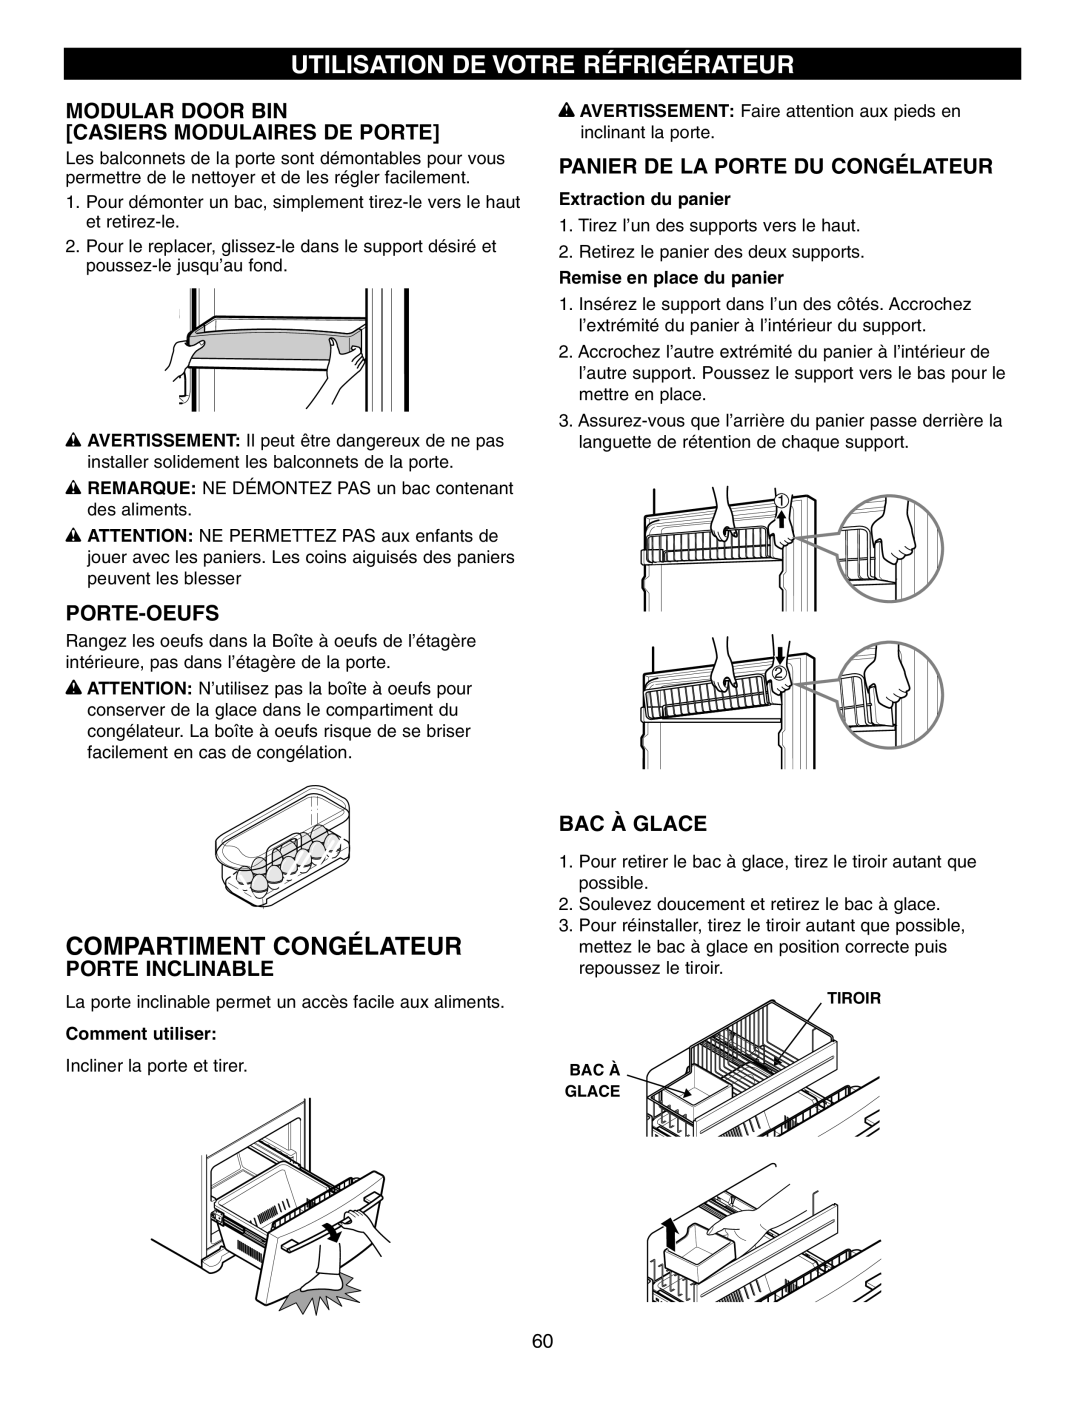 LG Electronics LFX25960 manual Compartiment Congélateur, Utilisation De Votre Réfrigérateur, Porte-Oeufs, Porte Inclinable 